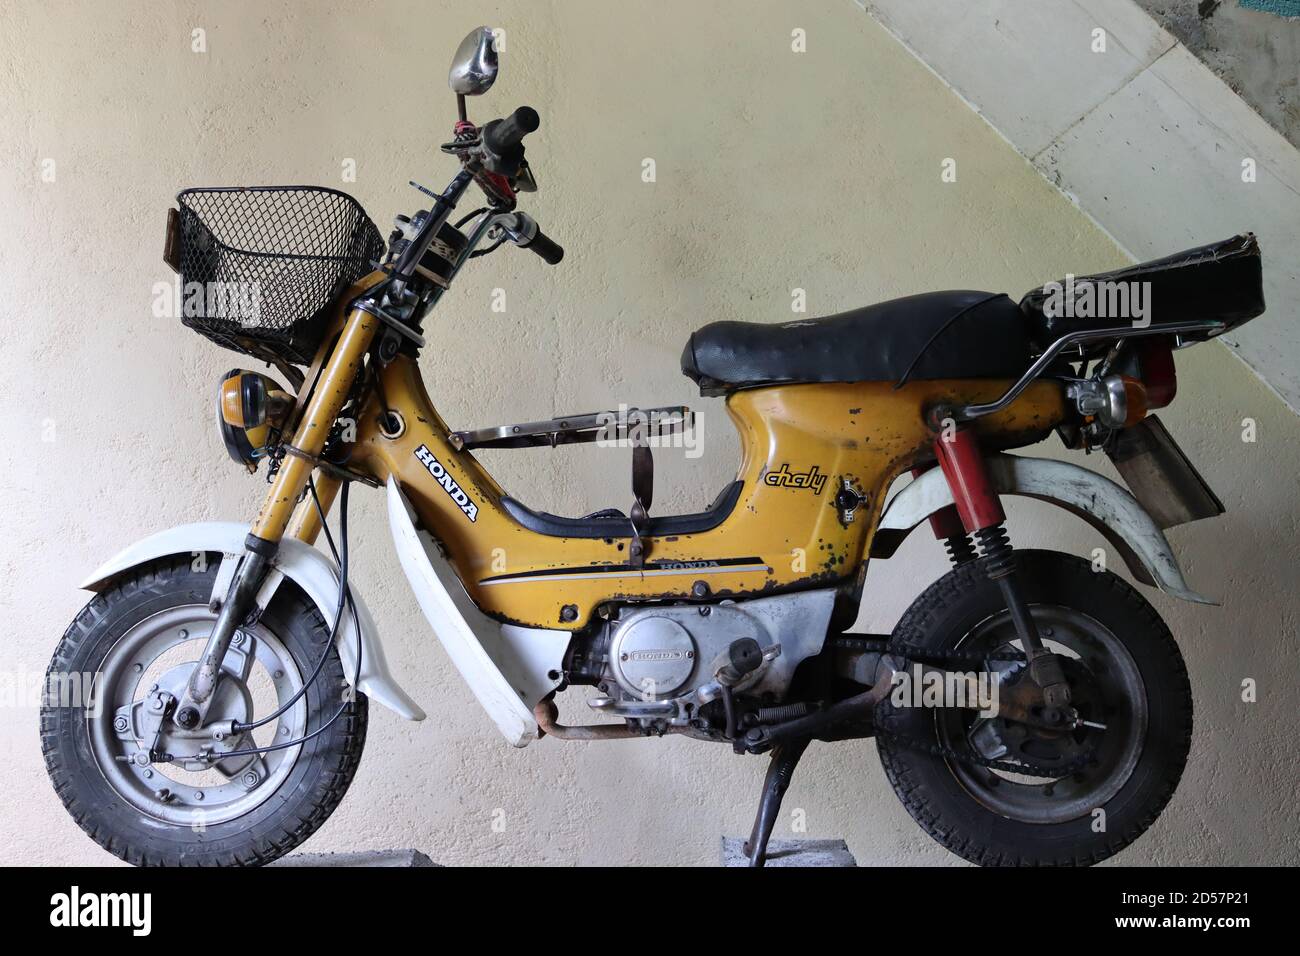 En très bon état de marche et à l'origine du Japon sous la marque Honda et la série de modèles comme Chaly cette moto a fait en 1984. Banque D'Images